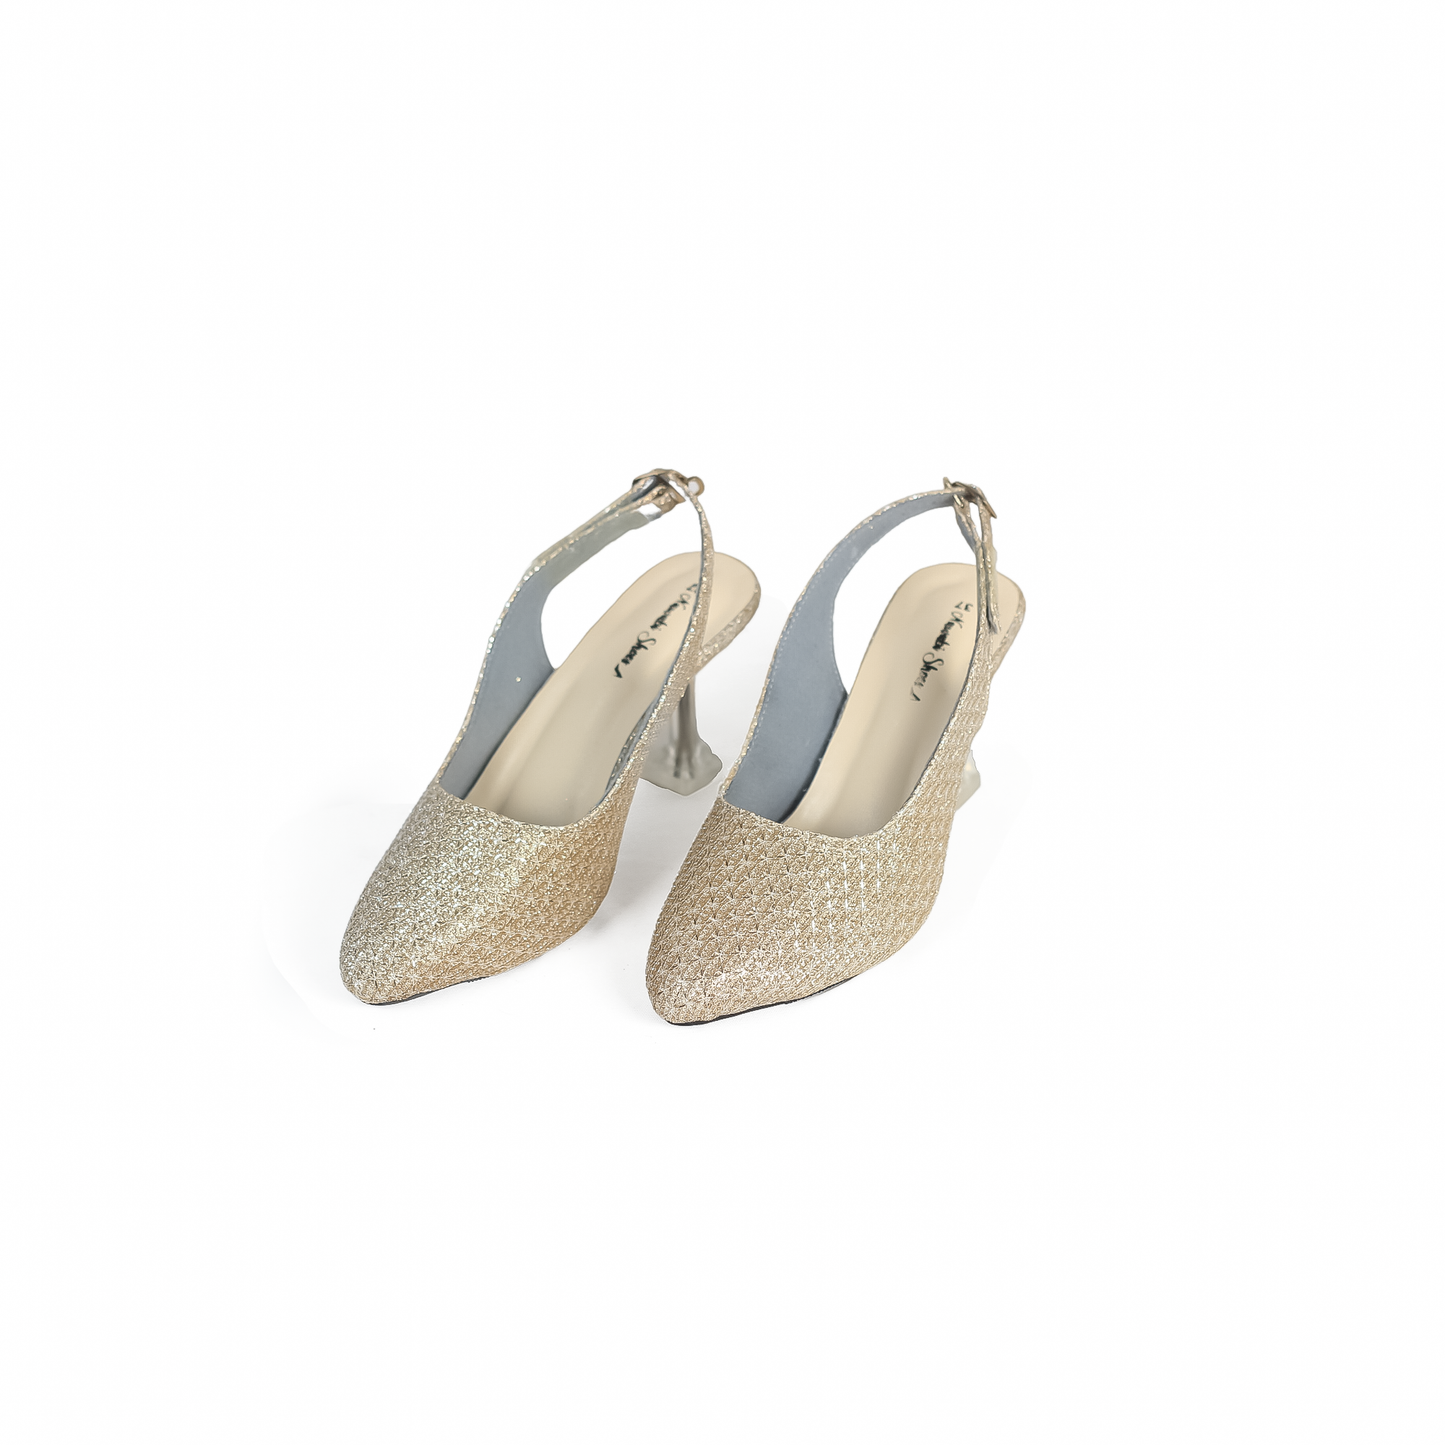 Cream Half Transparent Heels-Nawabi Shoes BD